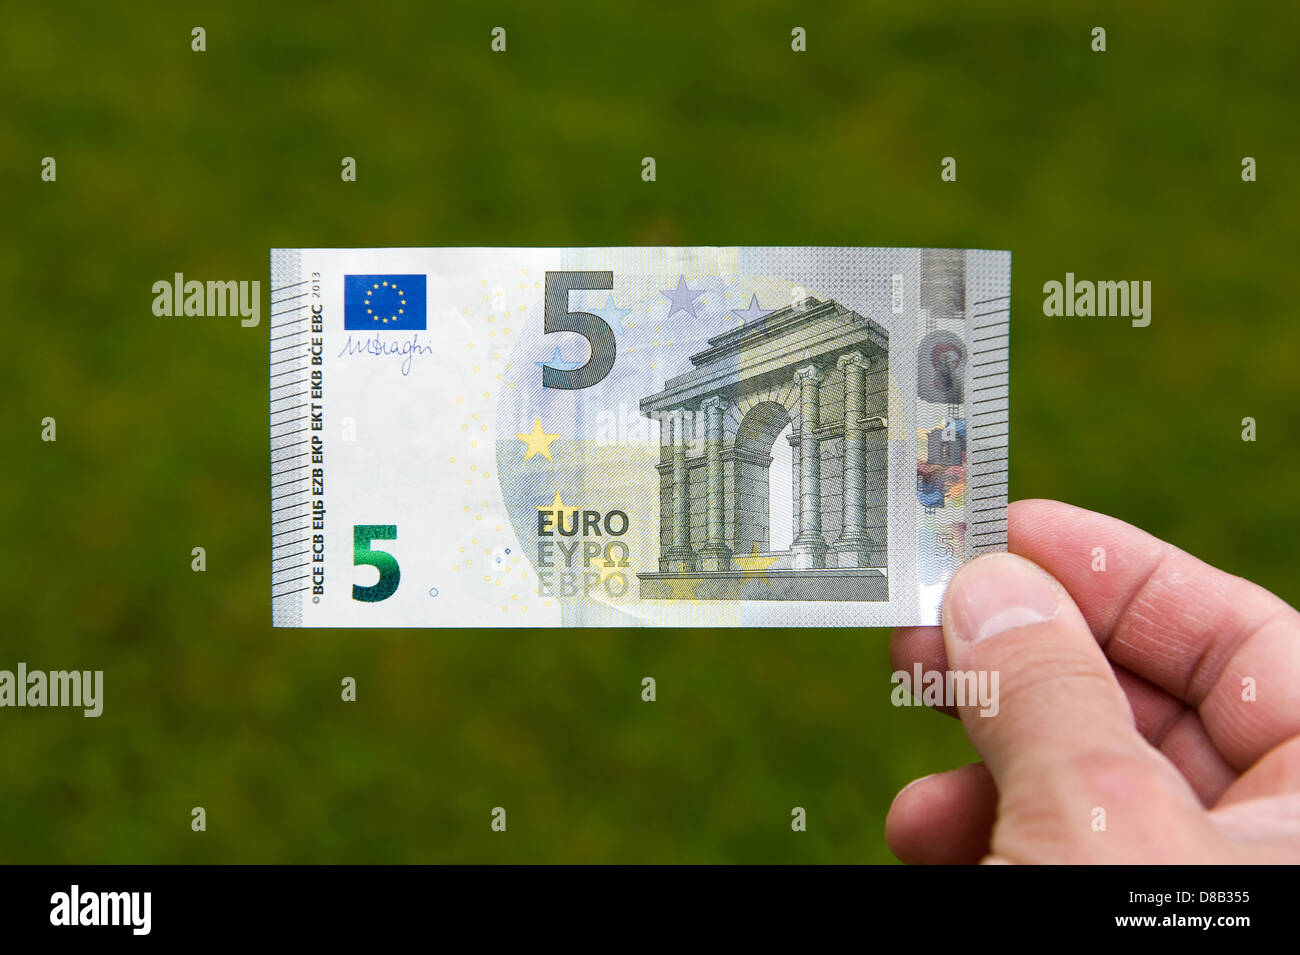 El nuevo billete de 5 euros entra en circulación el 2 de mayo